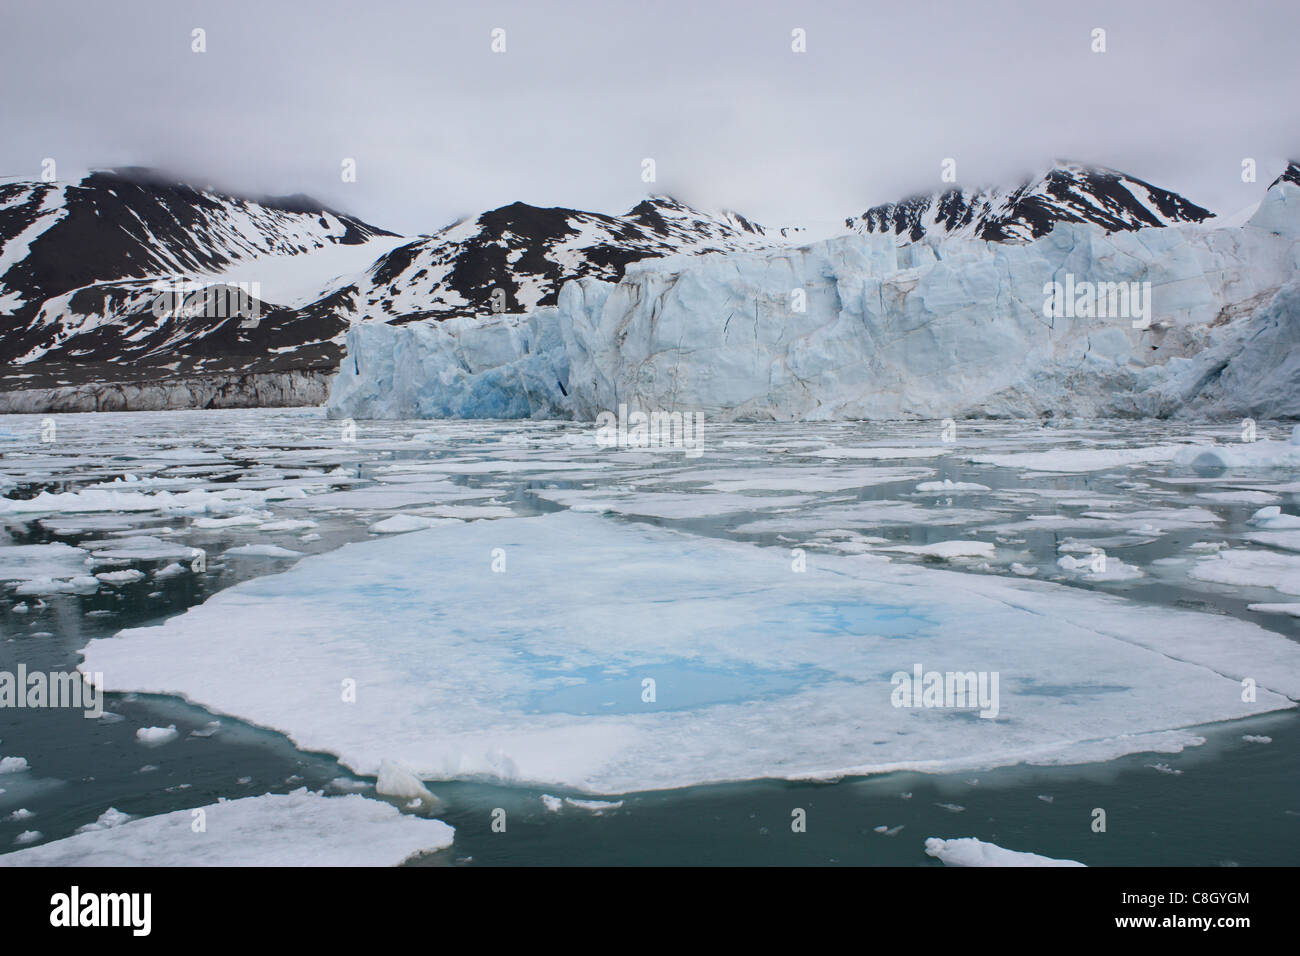 Svalbard, Spitsbergen, Arctic, Norway, Europe, polar region, ice, nature, landscape, island, isle, archipelago, drift ice, glaci Stock Photo